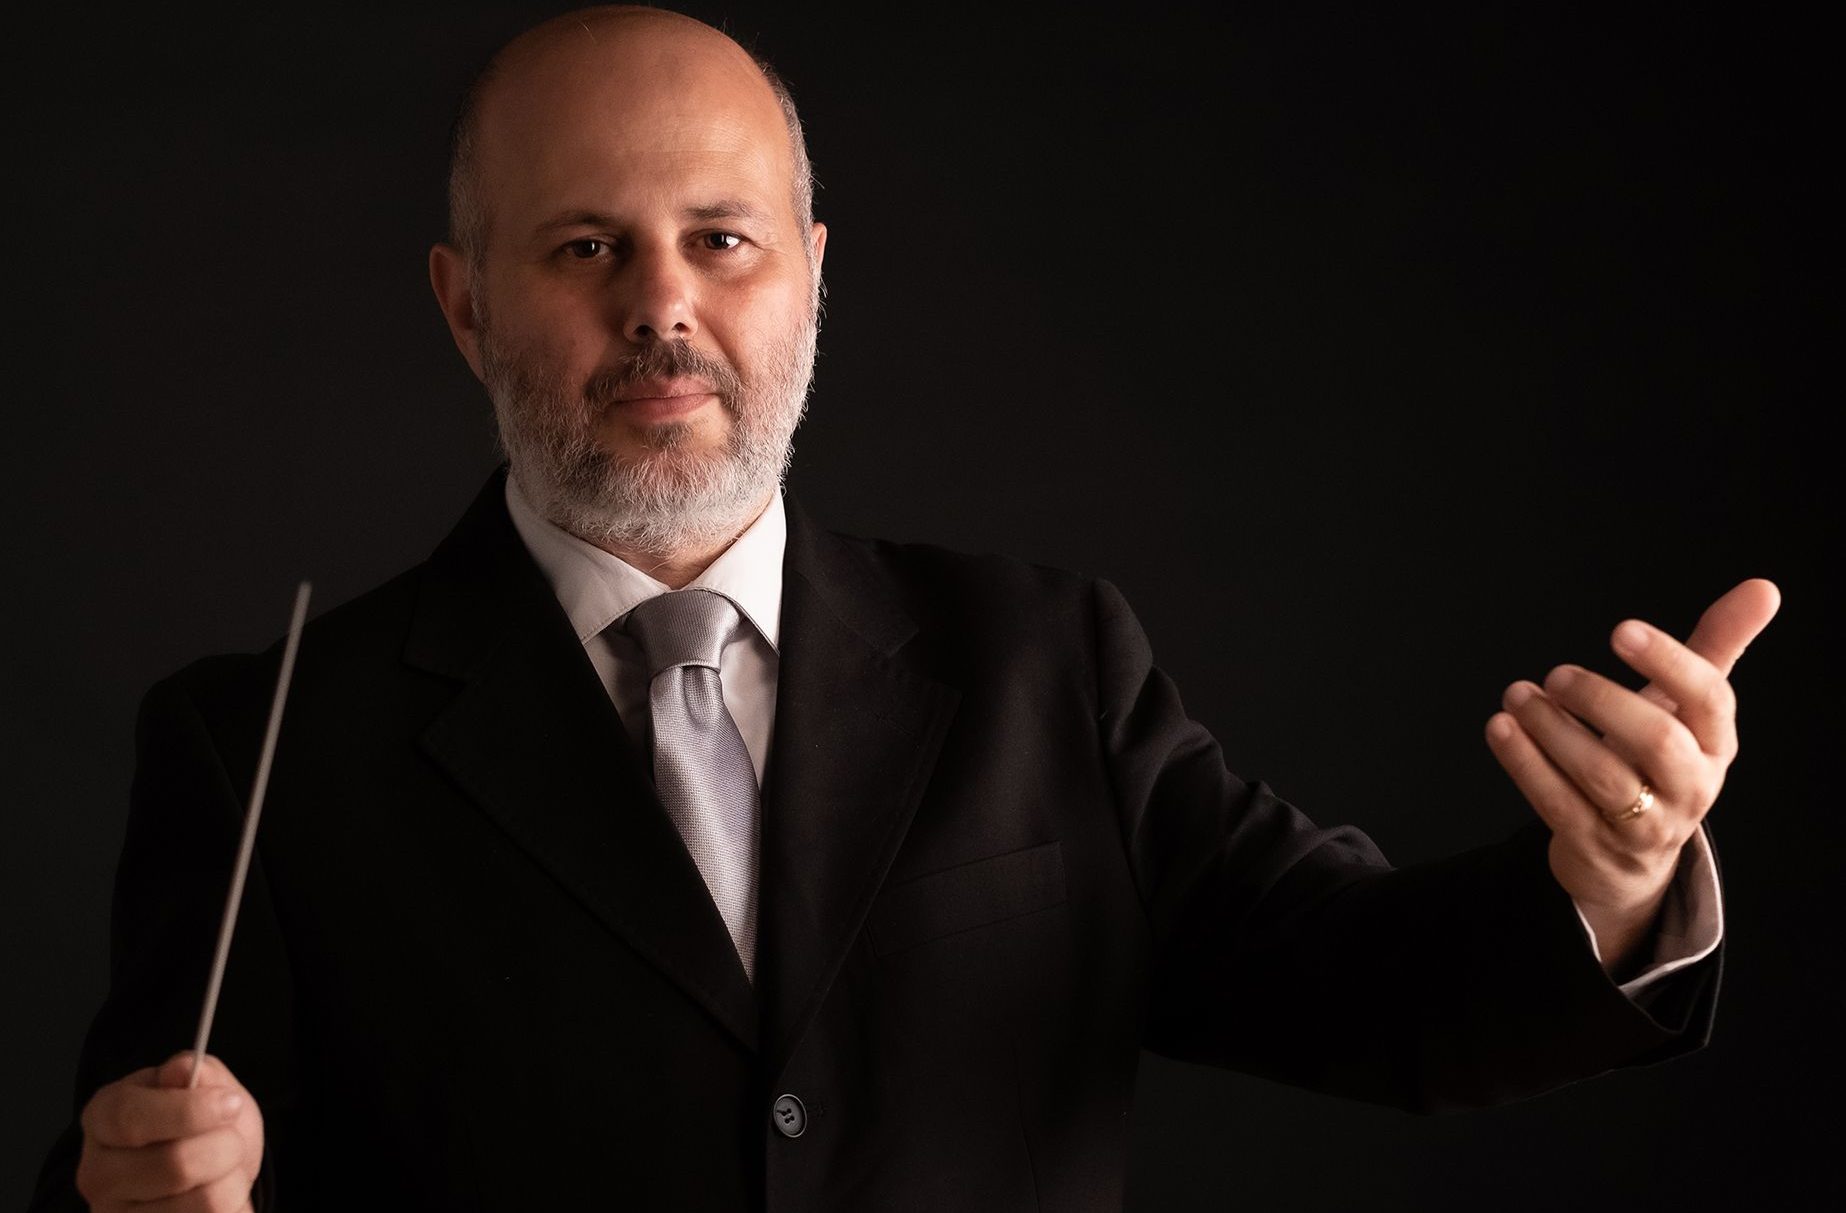 Orchestra Sinfonica Siciliana, nel giorno del debutto di stagione aumenta del 10% il fondo ministeriale